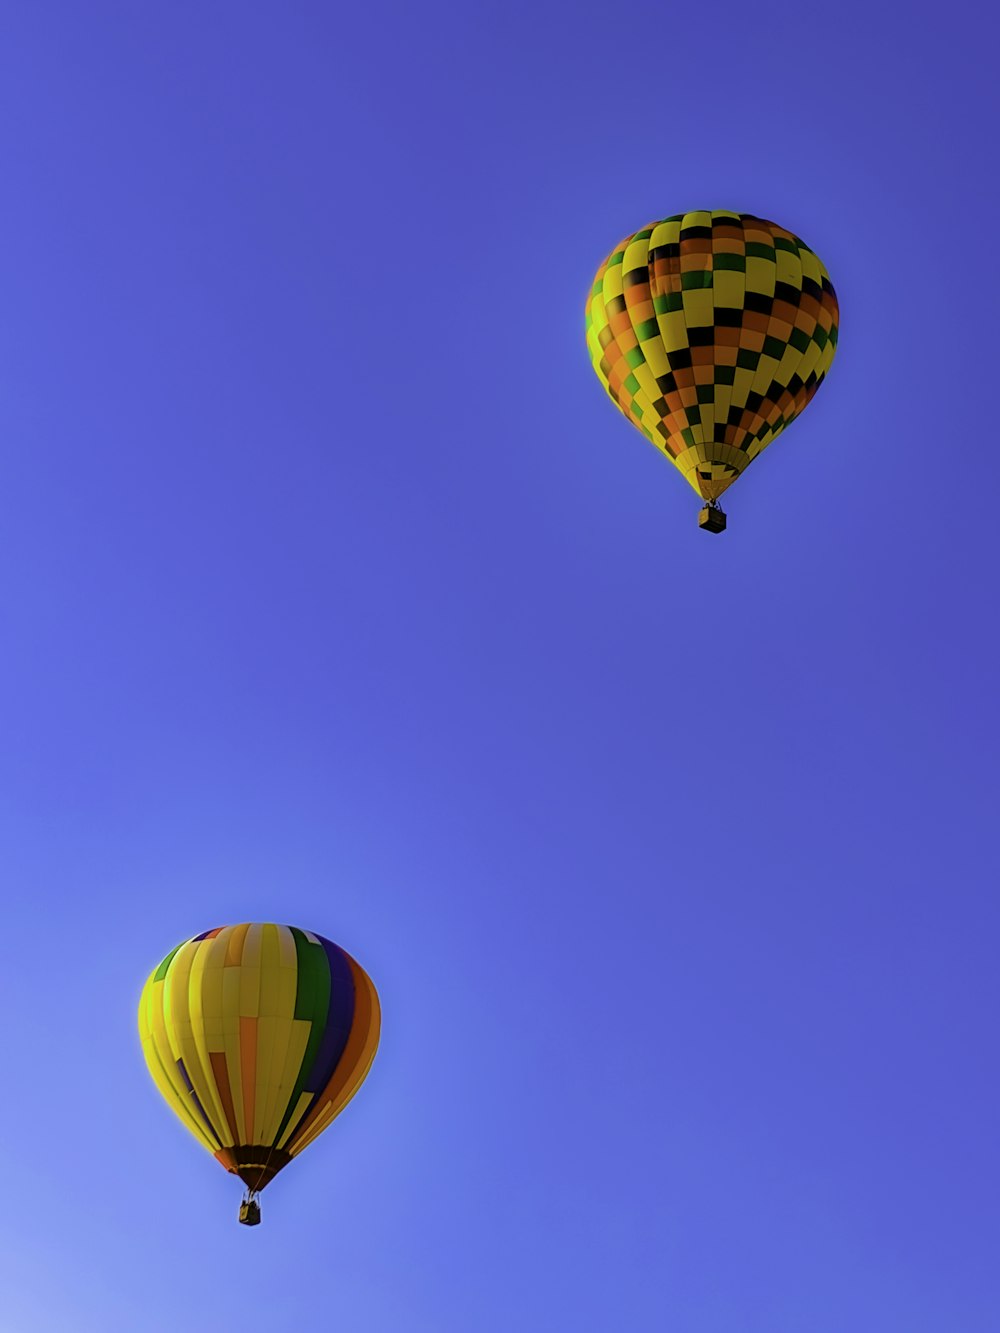 globo aerostático amarillo, verde y rojo en el aire bajo el cielo azul durante el día